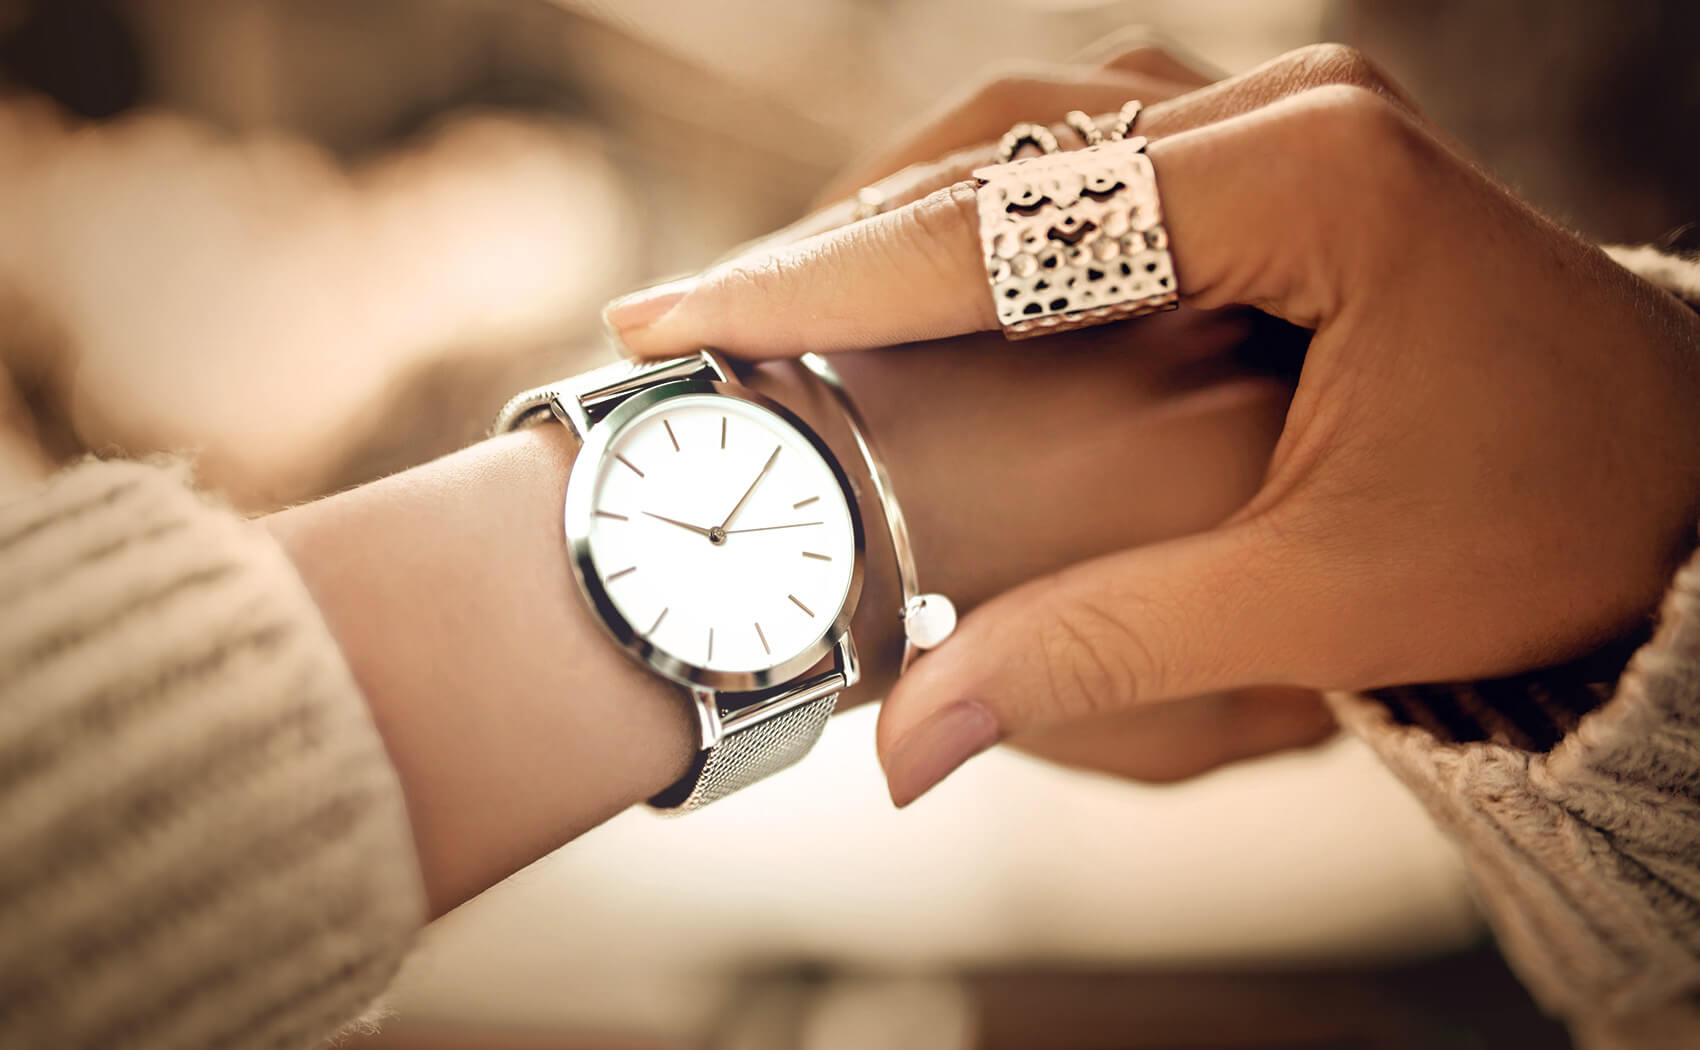 Image showcasing woman wearing watch